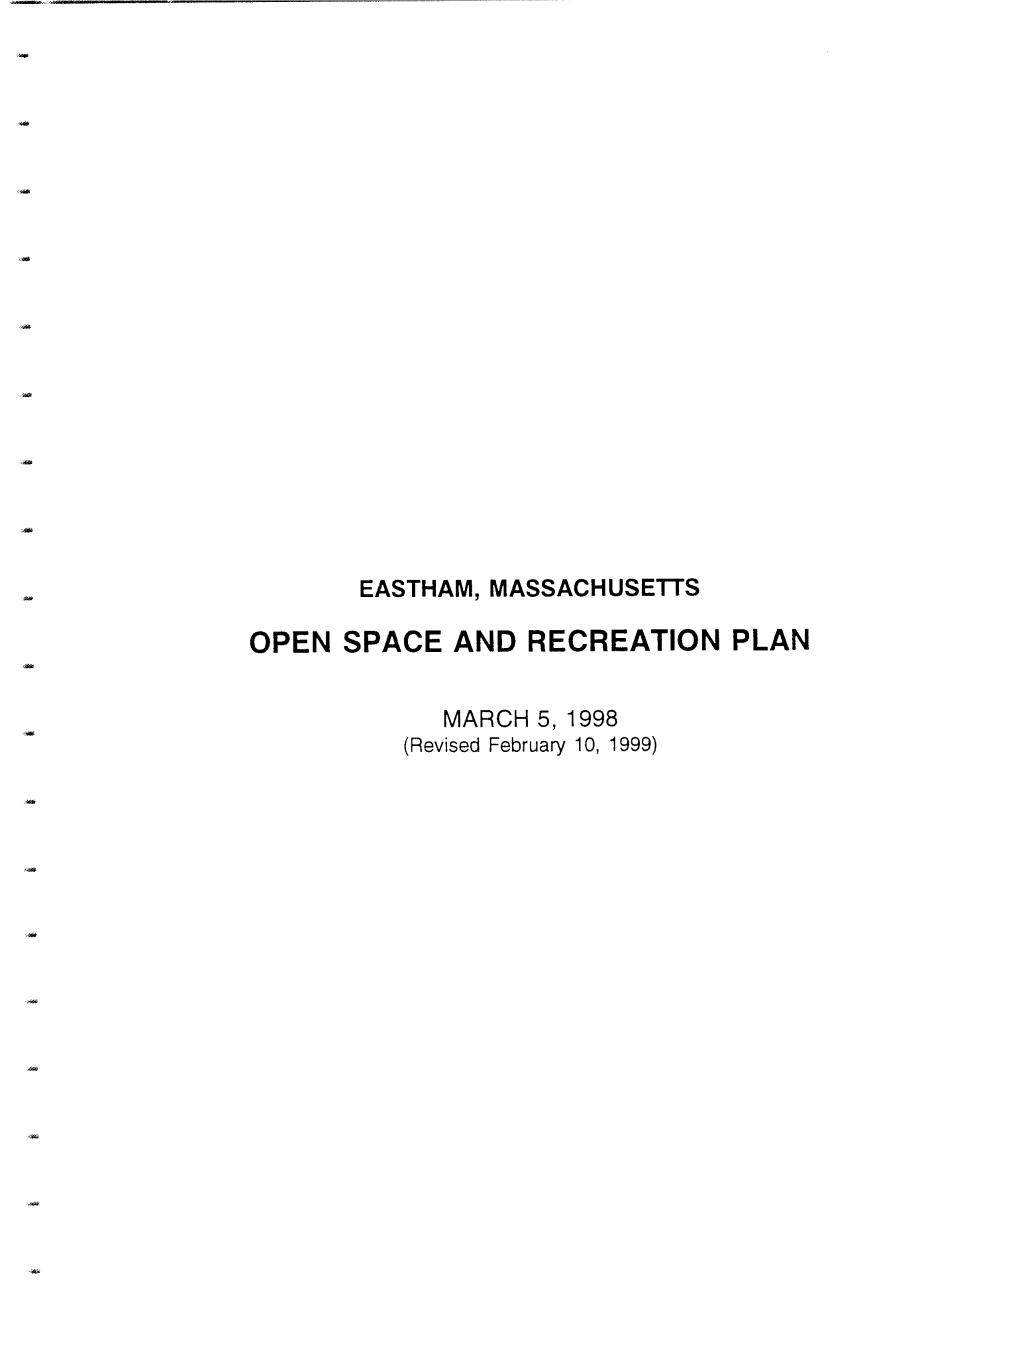 Open Space Plan 1998 Rev 1999